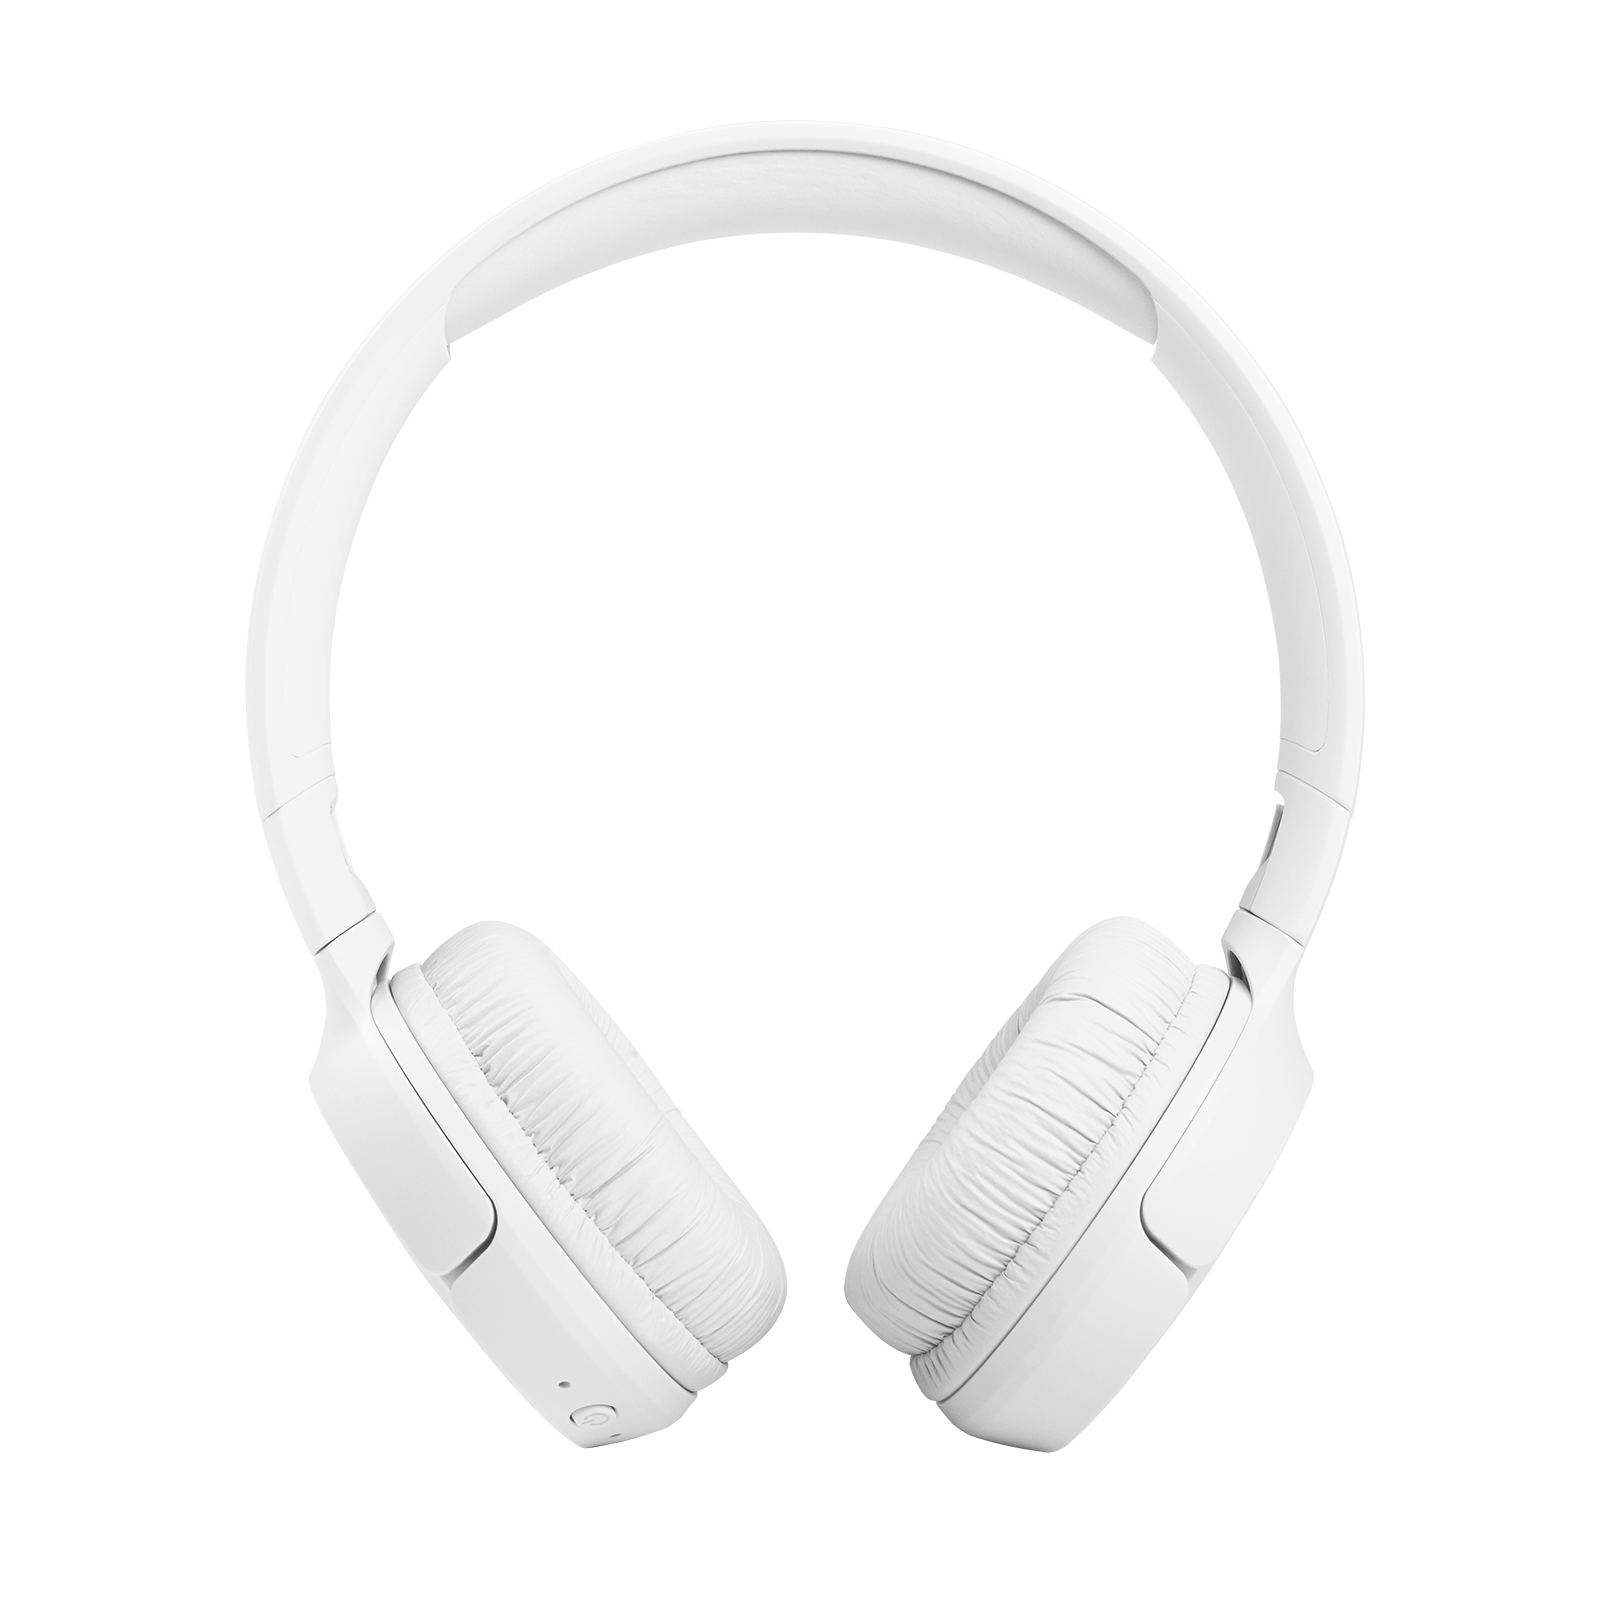 JBL Tune 510BT - White - Wireless on-ear headphones - Front